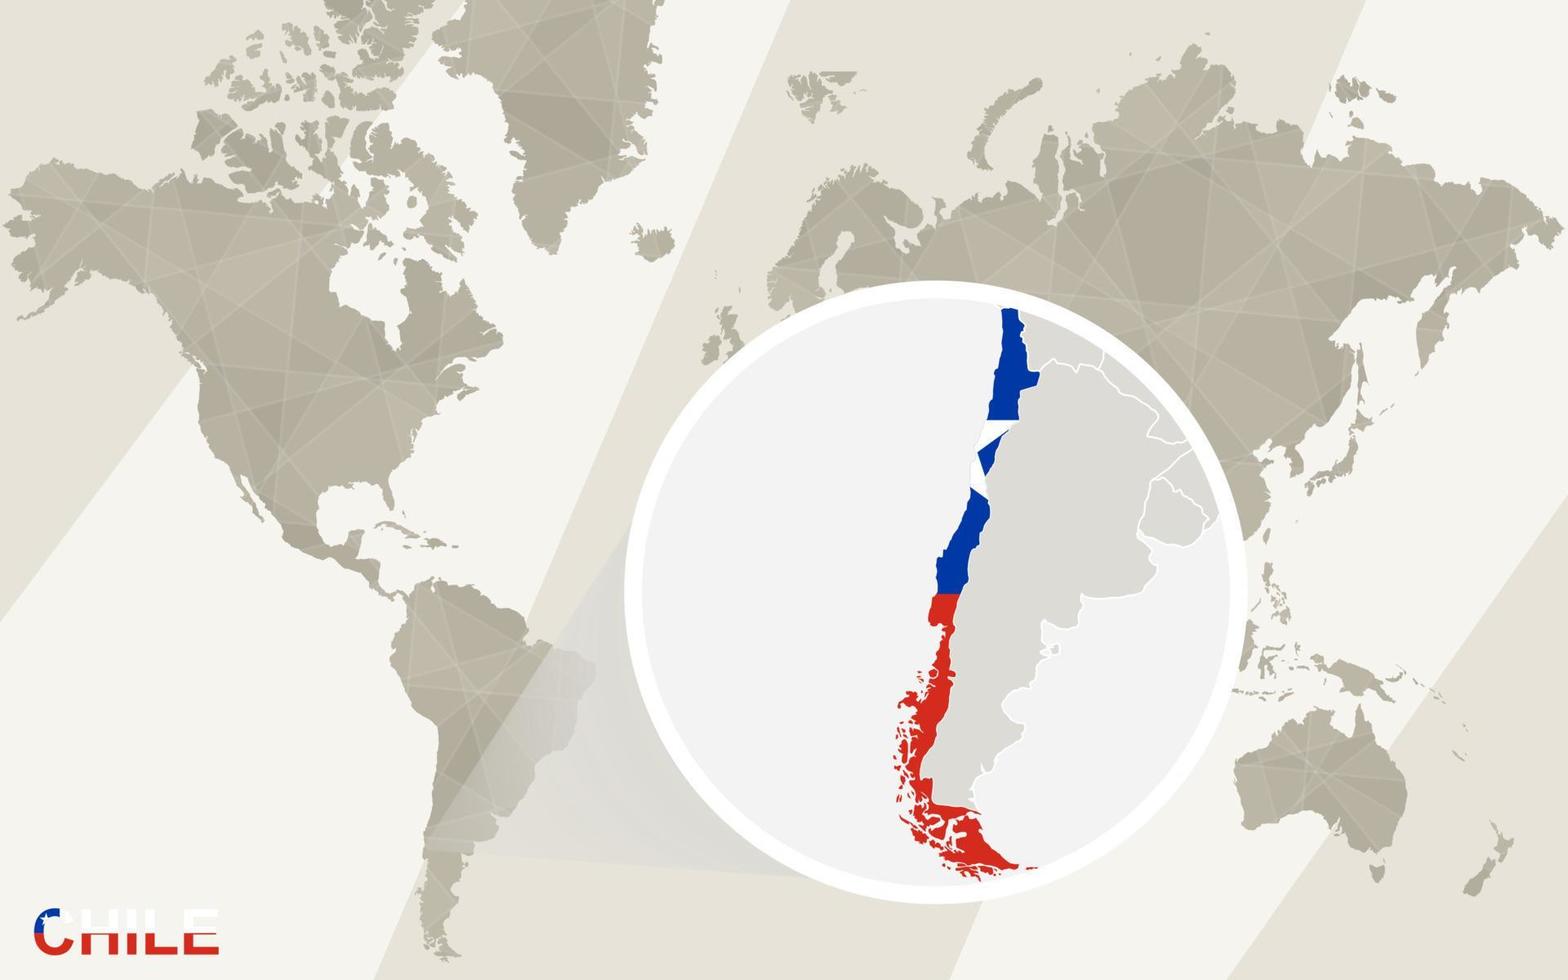 zoom en el mapa y la bandera de chile. mapa del mundo. vector